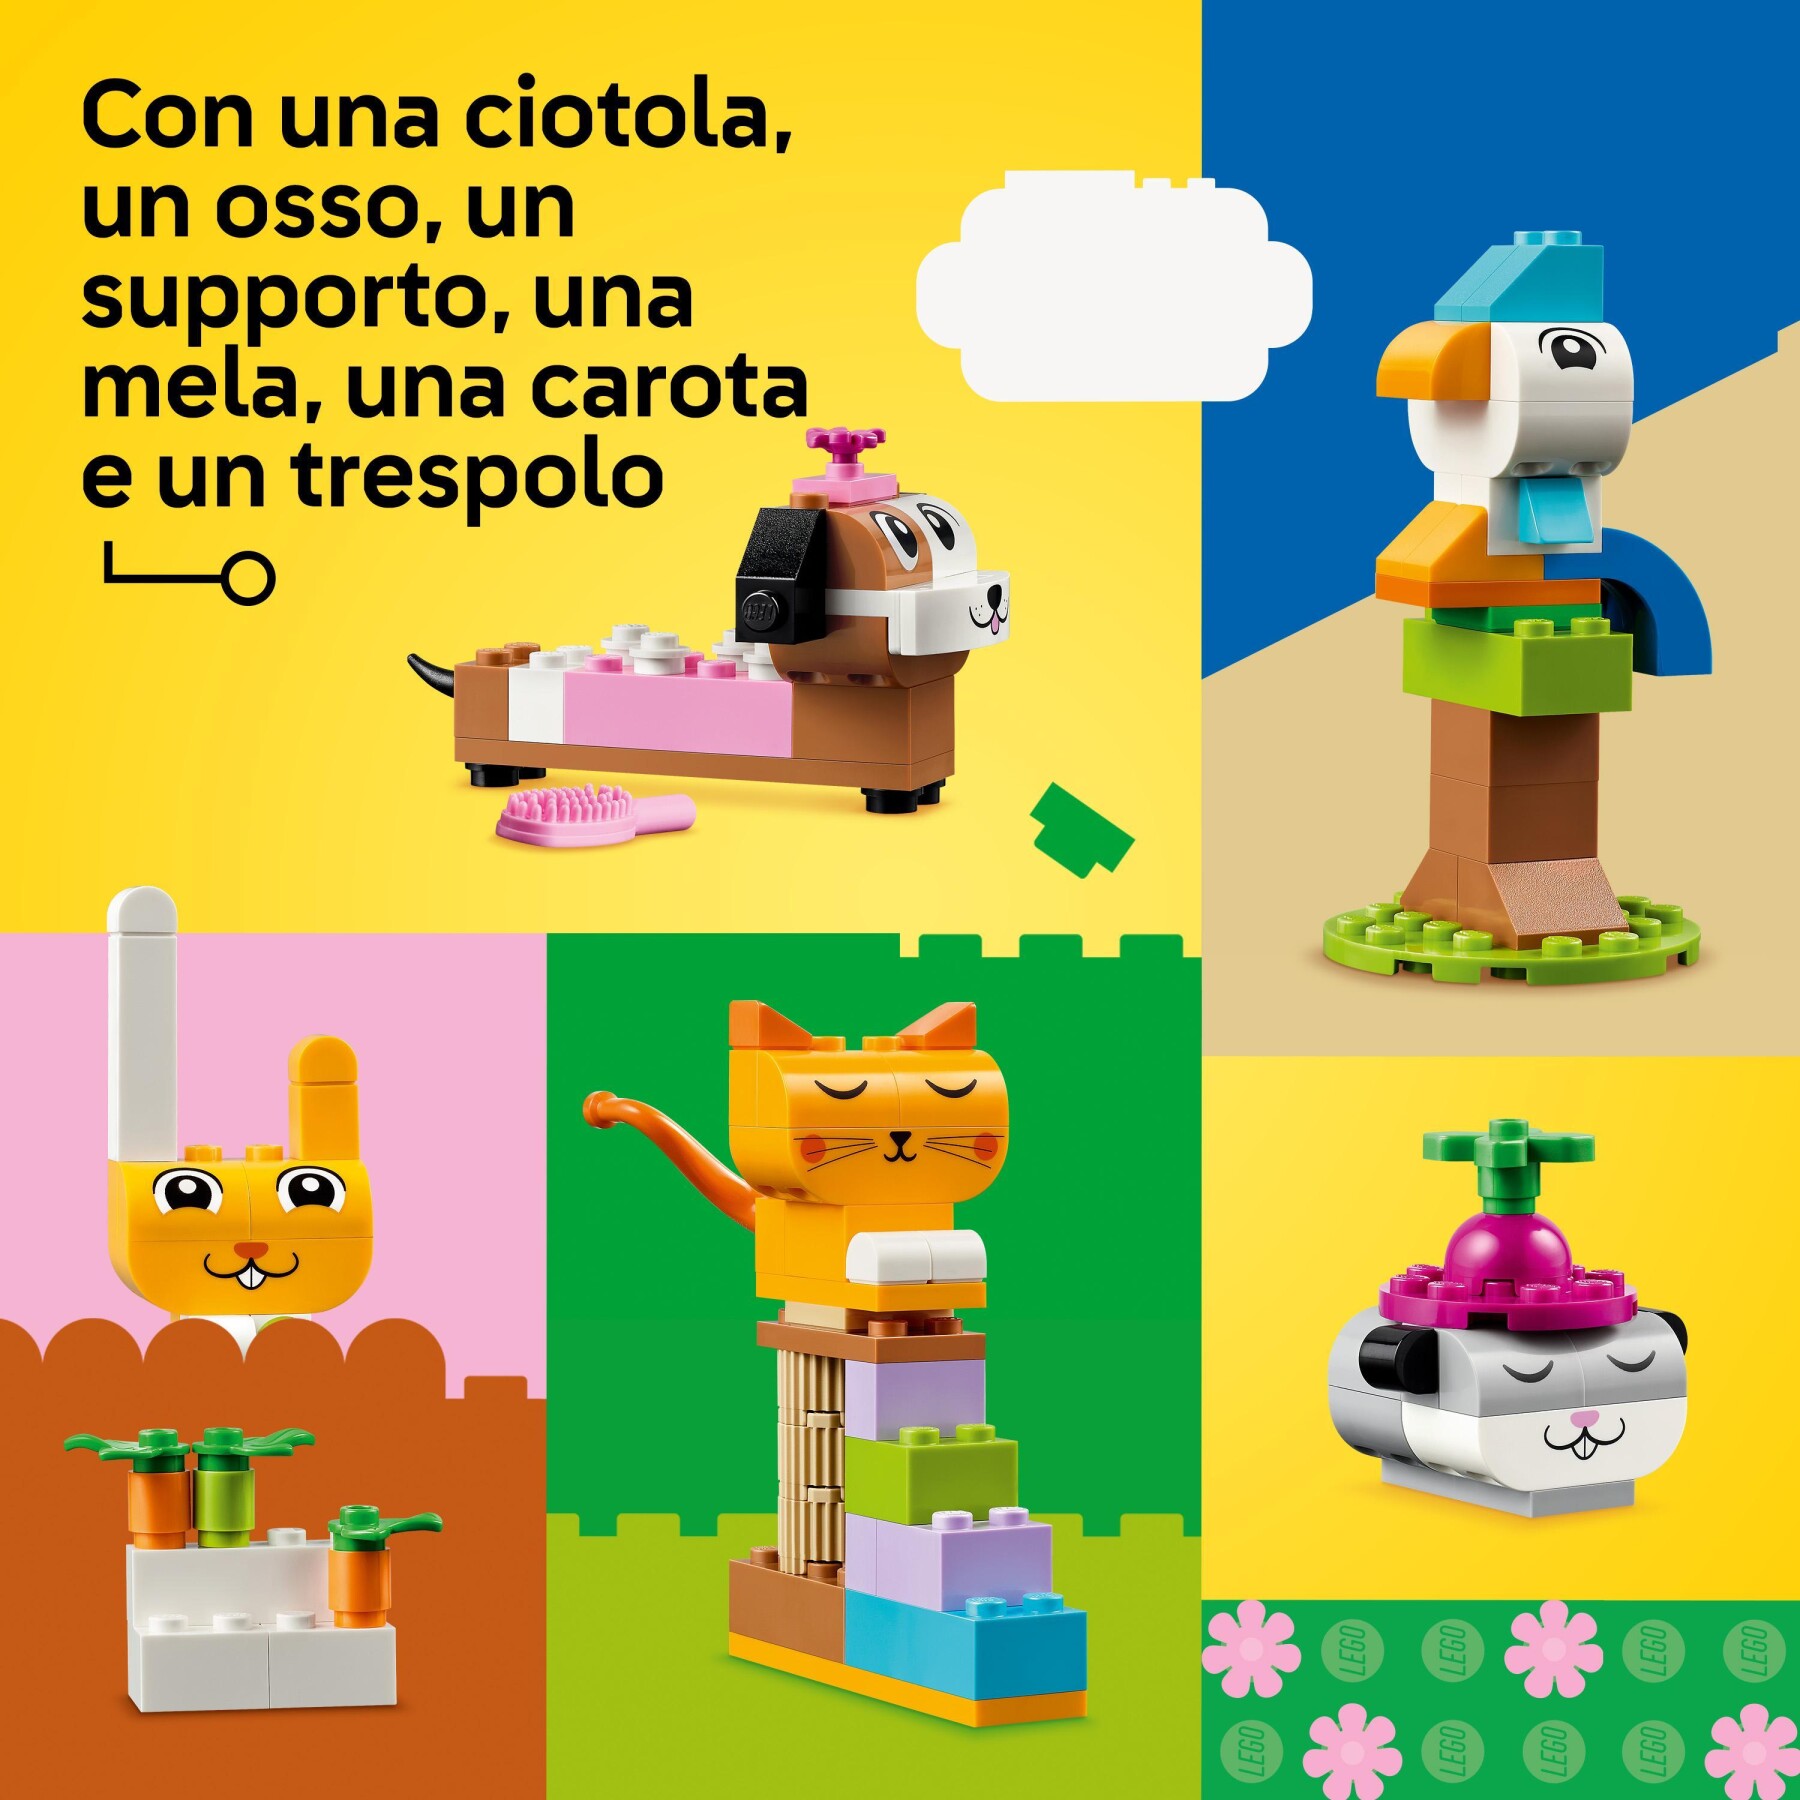 Lego classic 11034 animali domestici creativi, giocattolo per bambini di 5+ anni per costruire cane, gatto e altri animali - LEGO CLASSIC